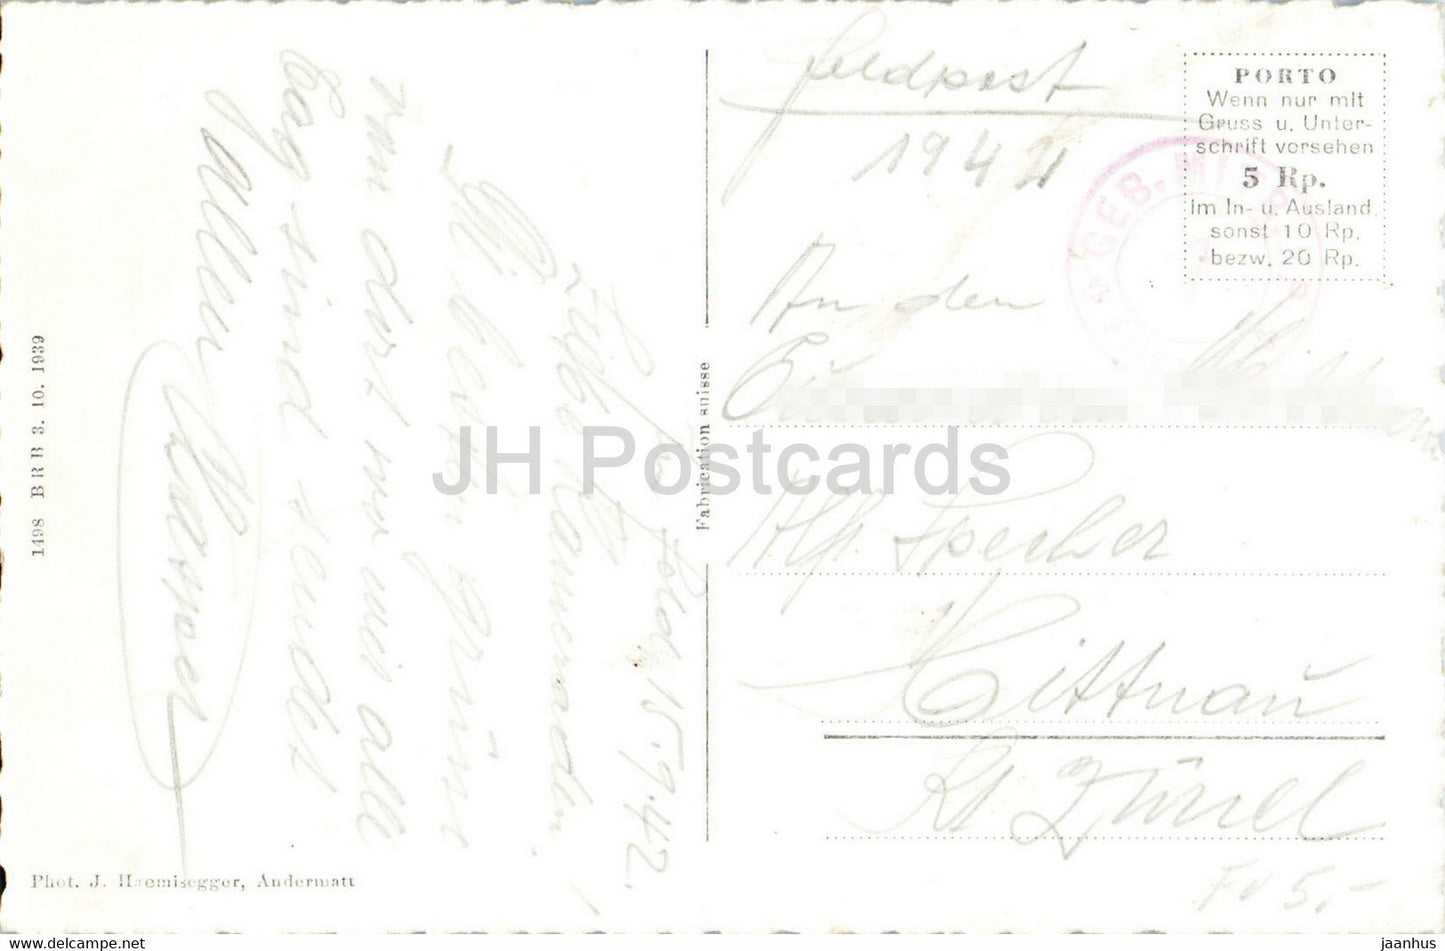 Andermatt - Piz Lucendro - 7206 - Feldpost - Militärpost - alte Postkarte - 1944 - Schweiz - gebraucht